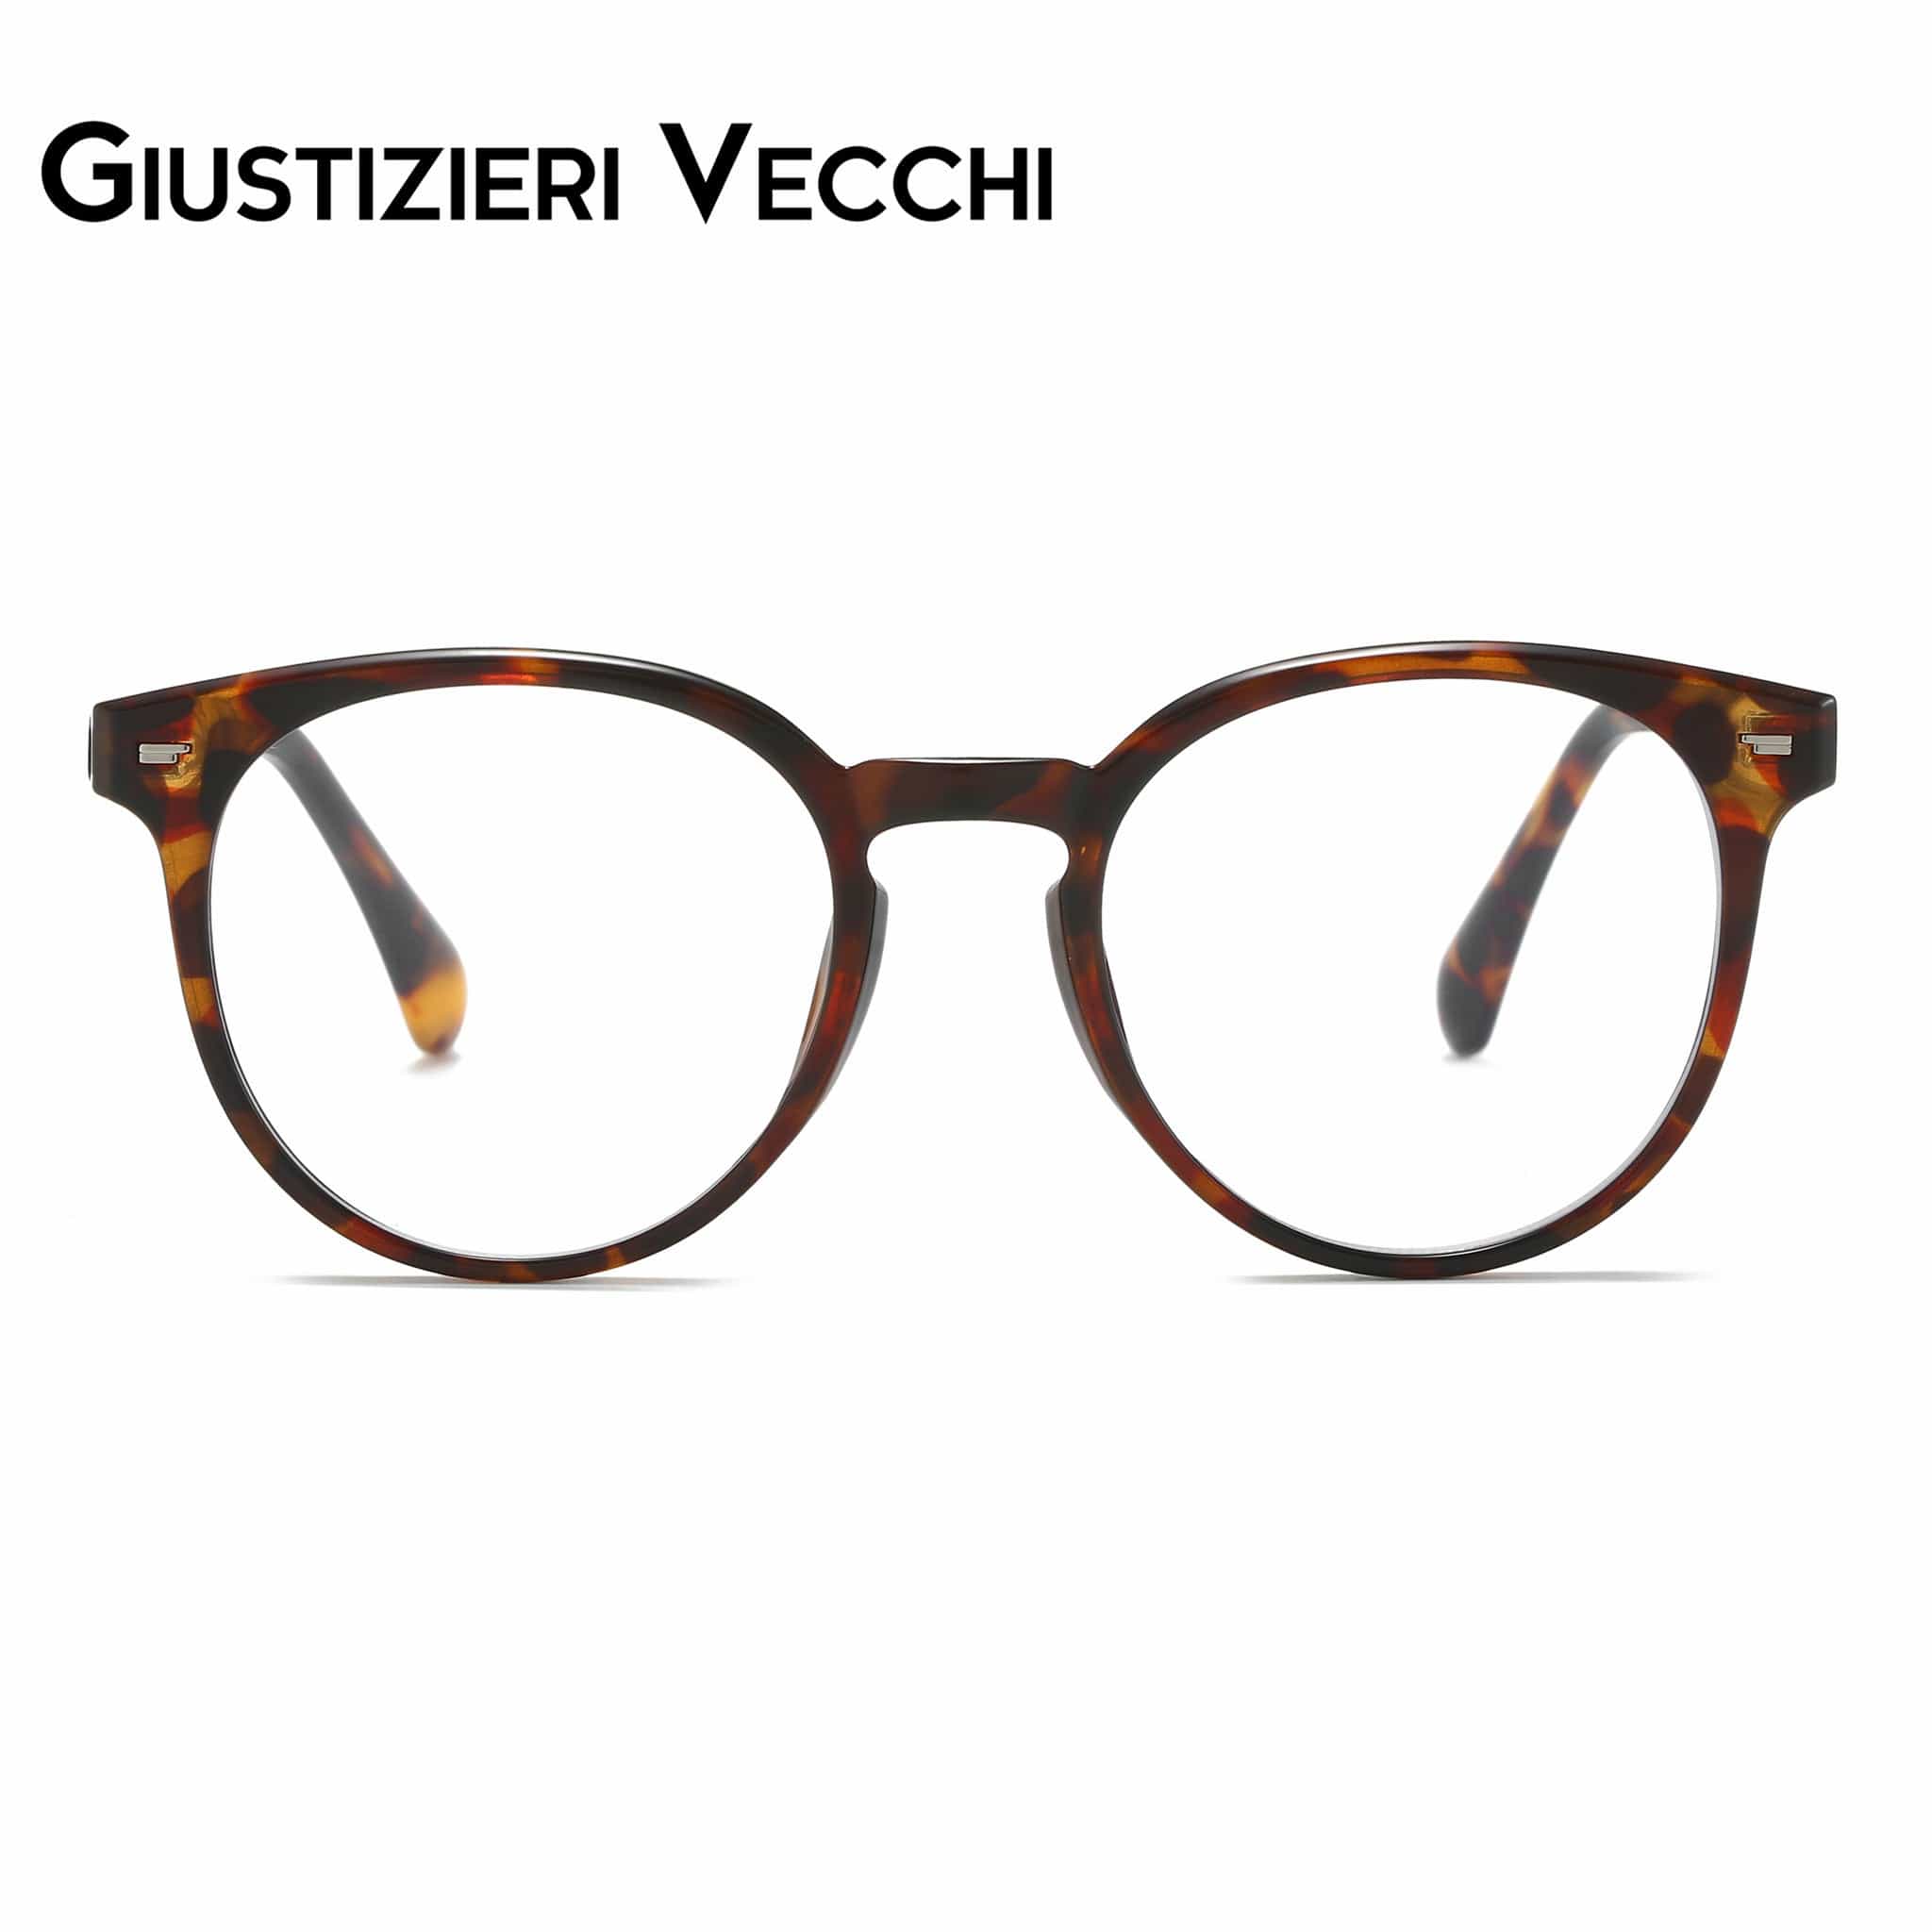 GIUSTIZIERI VECCHI Eyeglasses Small / Merigold Tortoise NeonBloom Uno